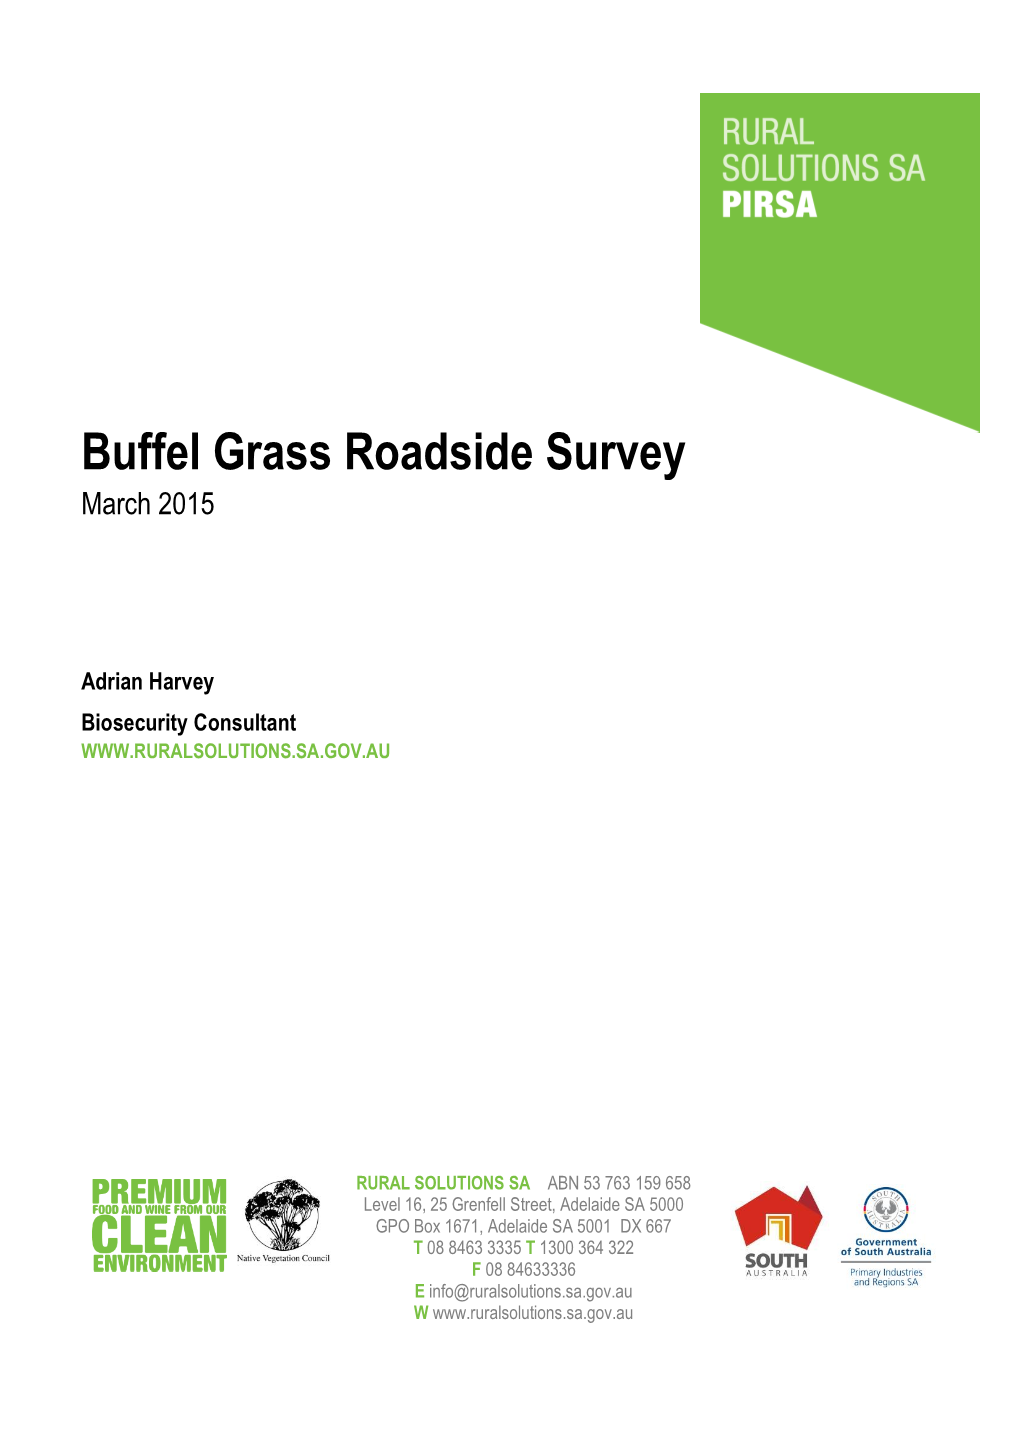 Buffel Grass Roadside Survey March 2015